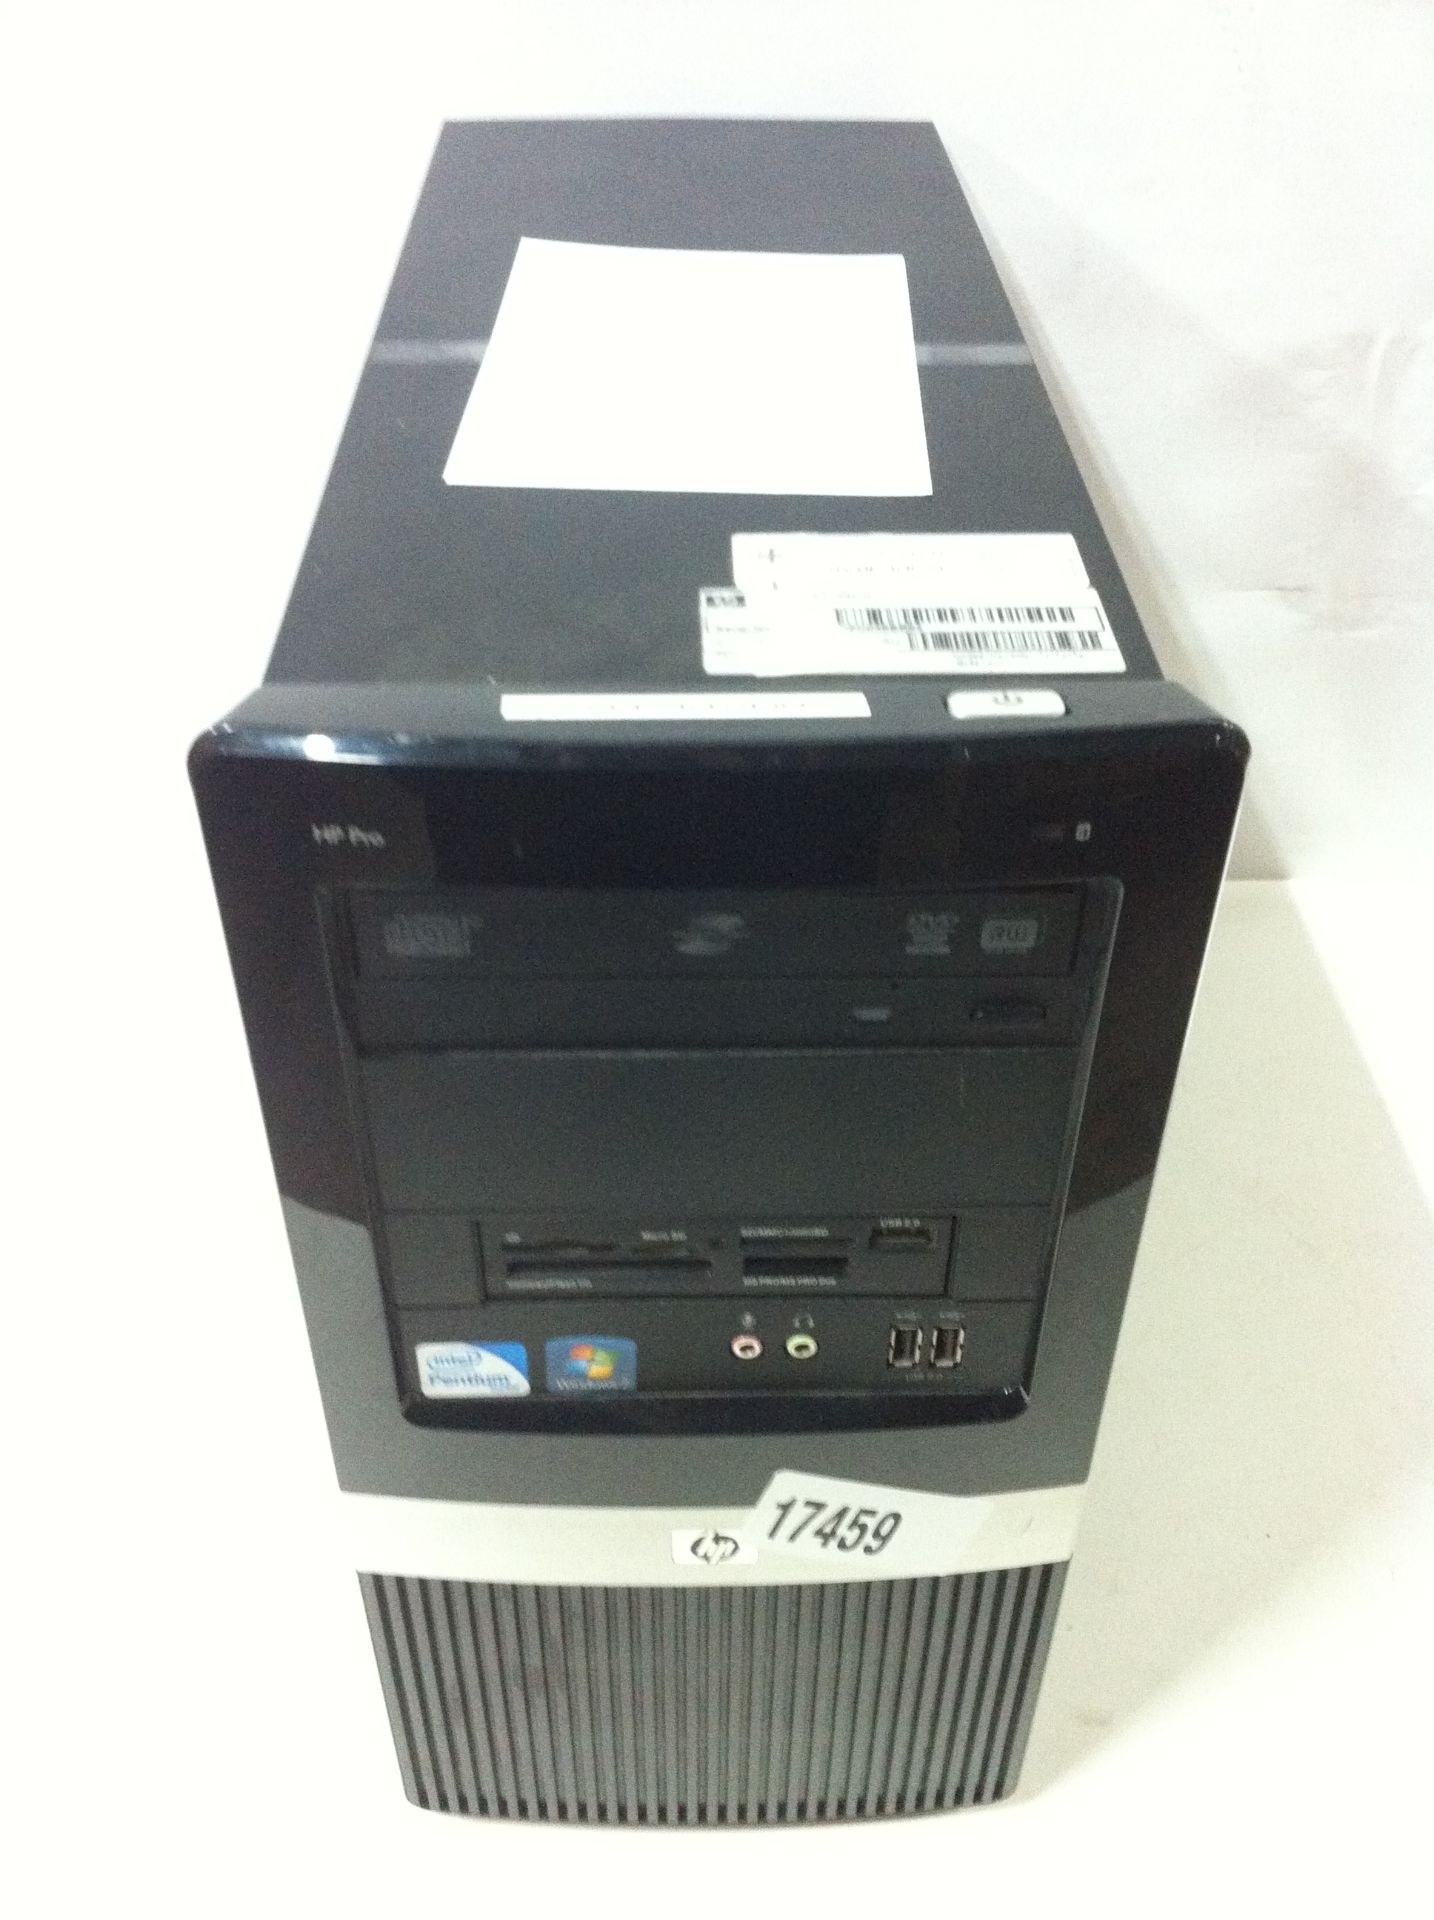 5x HP Desktop PC's - See Description - Image 5 of 6